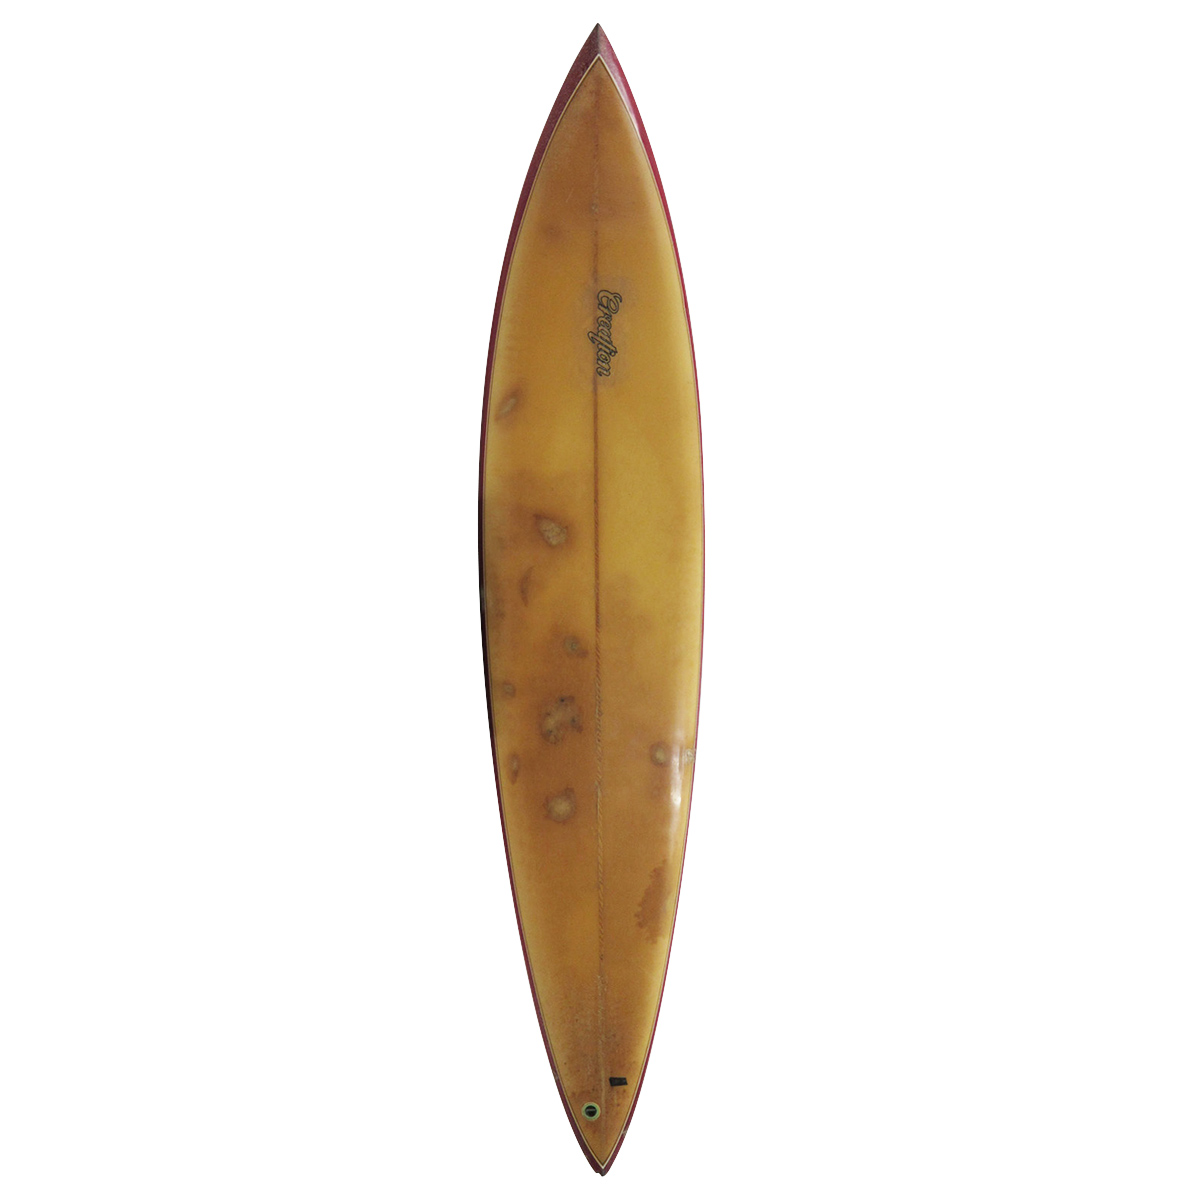  / Creation Surfboards / 7`6 Gun Shaped by Masaaki CHIBITA Kobayashi